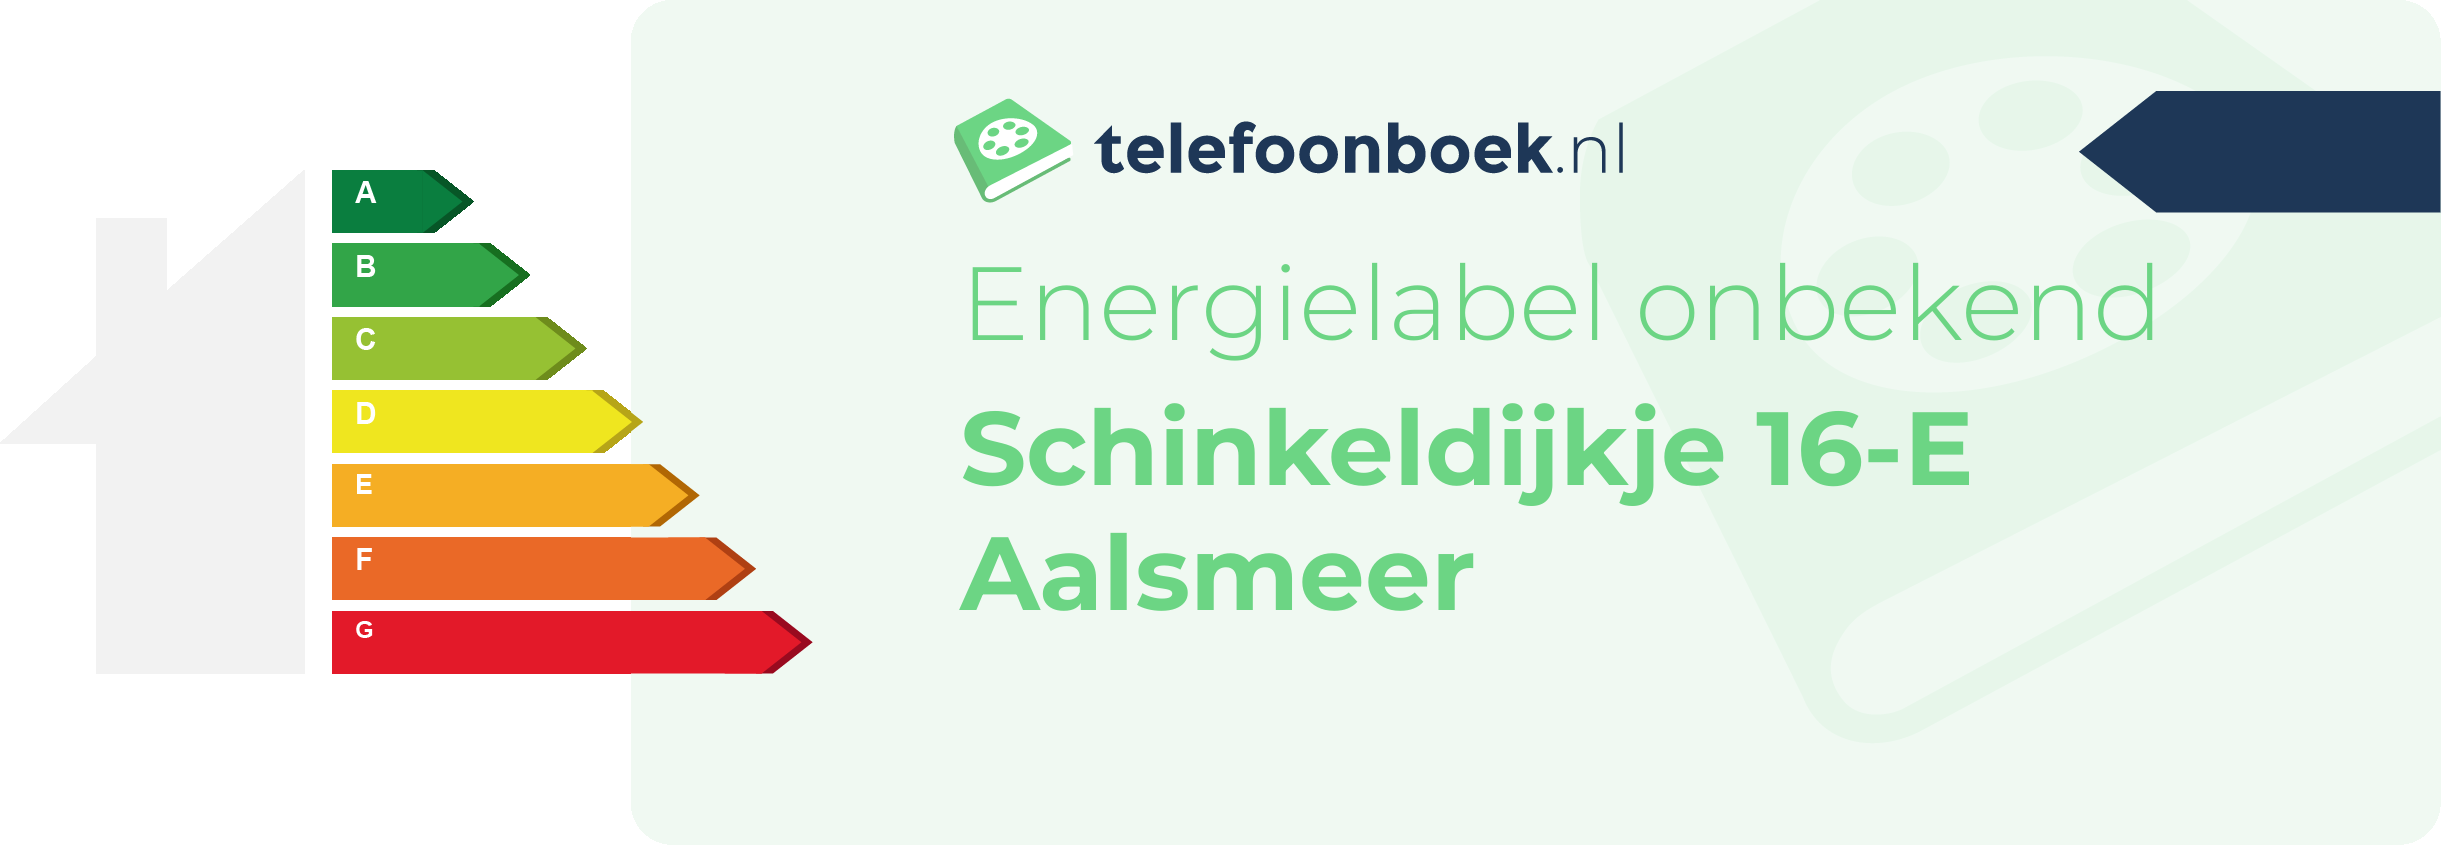 Energielabel Schinkeldijkje 16-E Aalsmeer